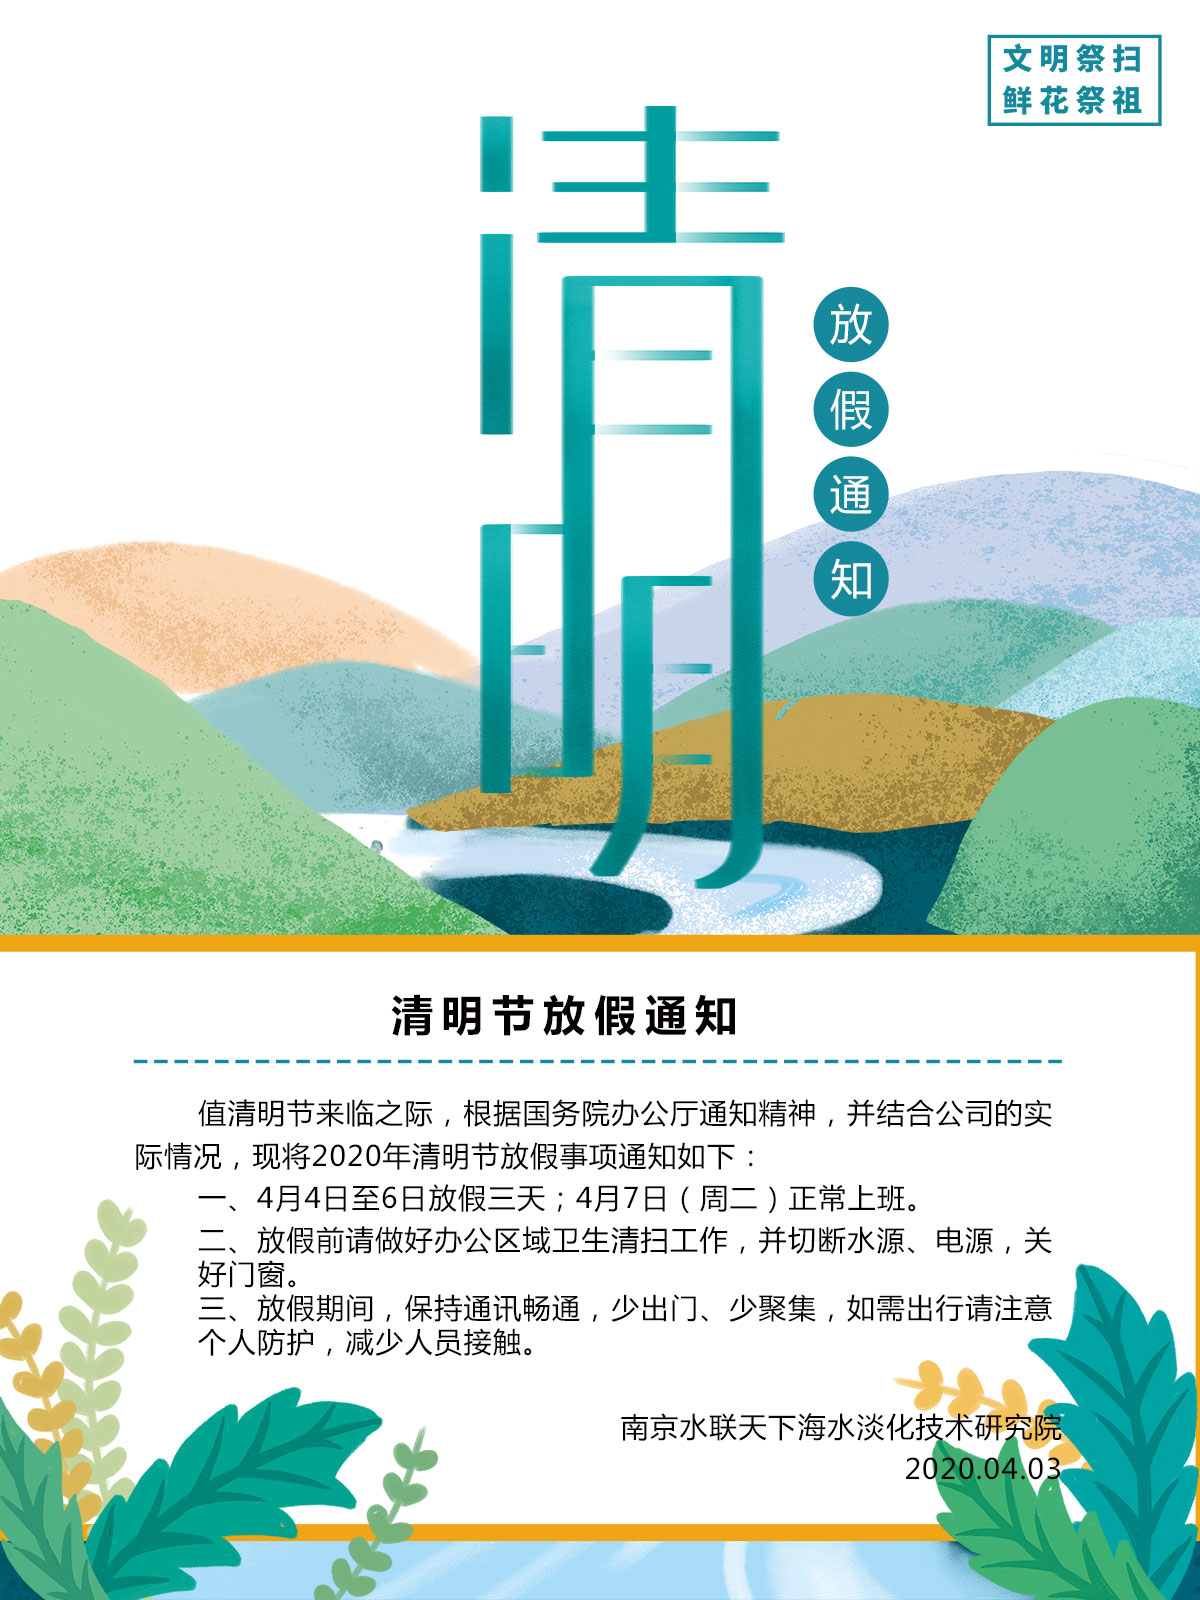 南京水联天下海水淡化技术研究院